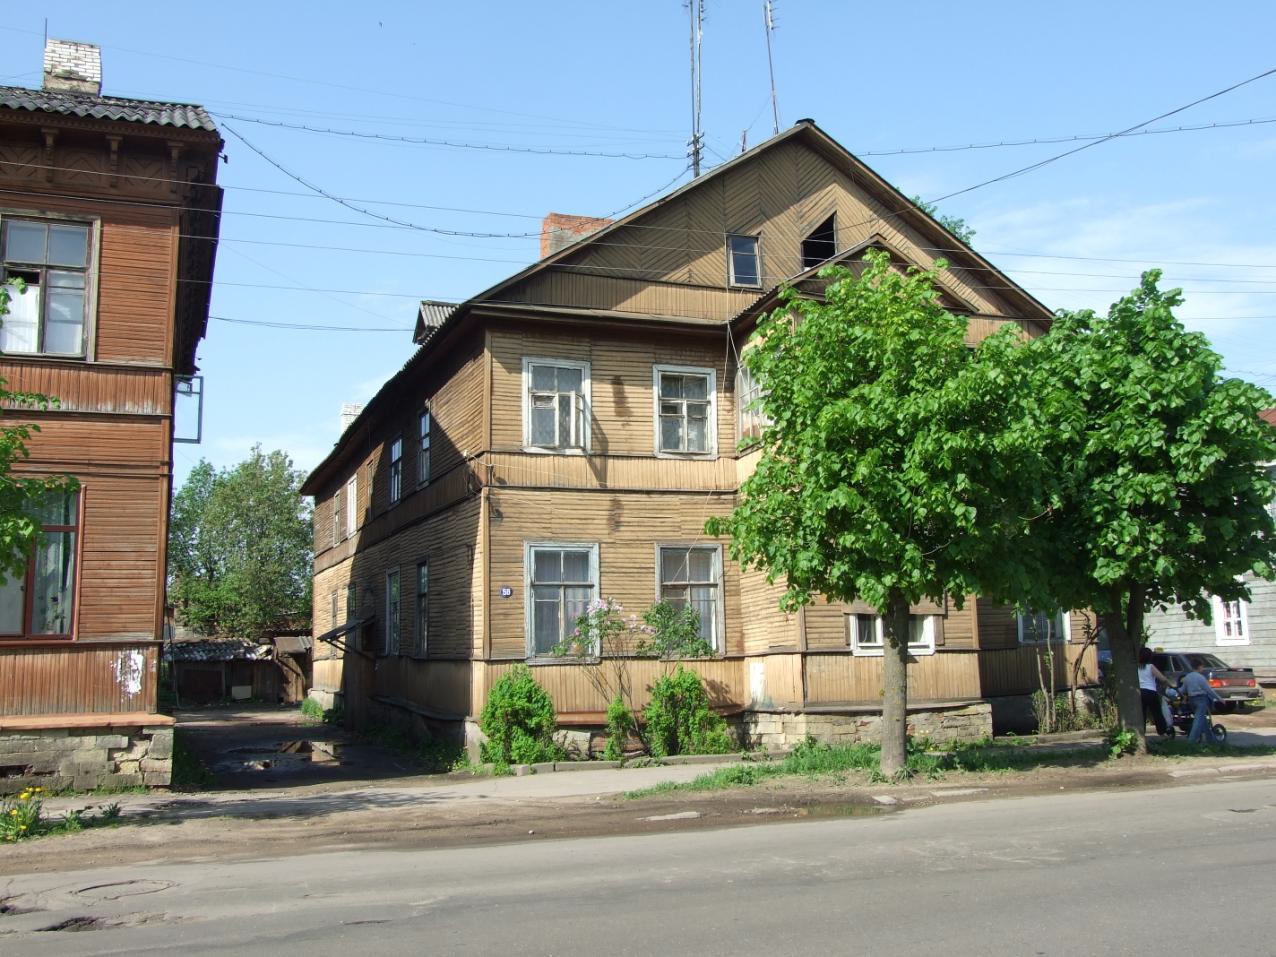 Дом № 58 на улице Чкалова (бывшей Люцевской) ,где в 1910 – 1912 годах жил А.Н. Будищев. Фото Владислава Кислова. 2008 год